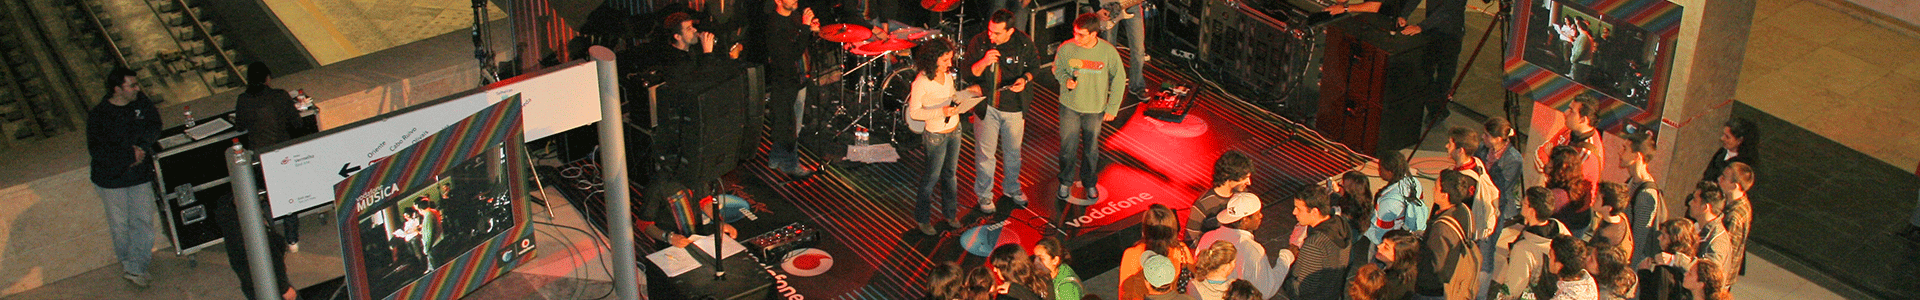 Fotografia de um palco com músicos na estação Alameda (linha Vermelha).